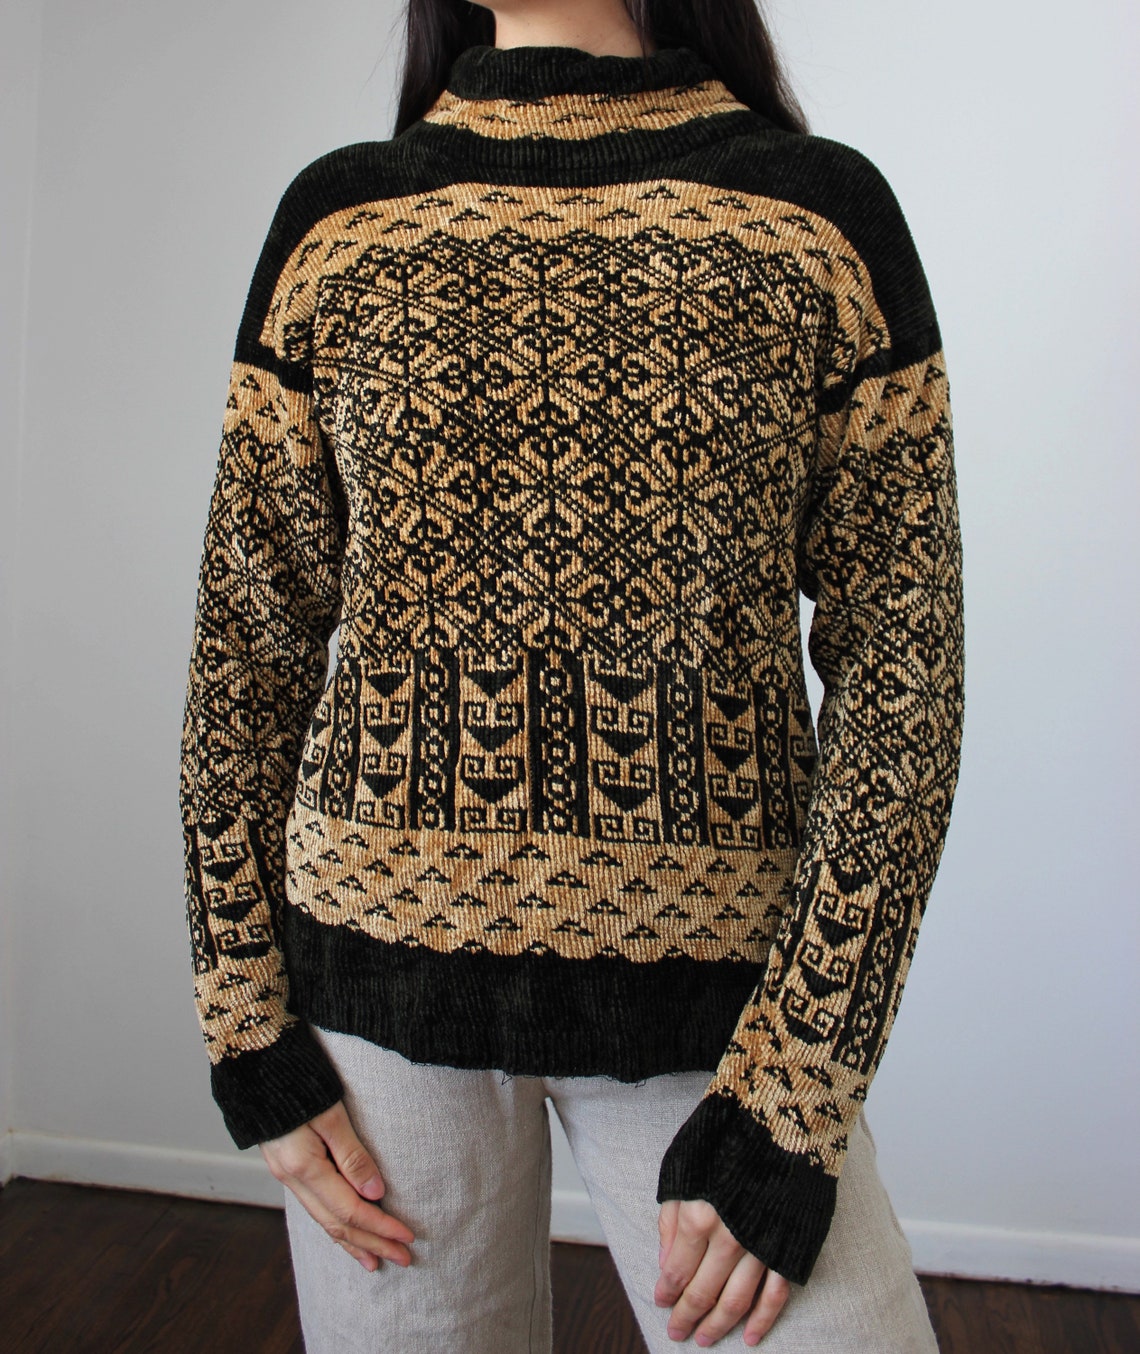 Vintage Black and Gold Turtleneck Sweater | Etsy